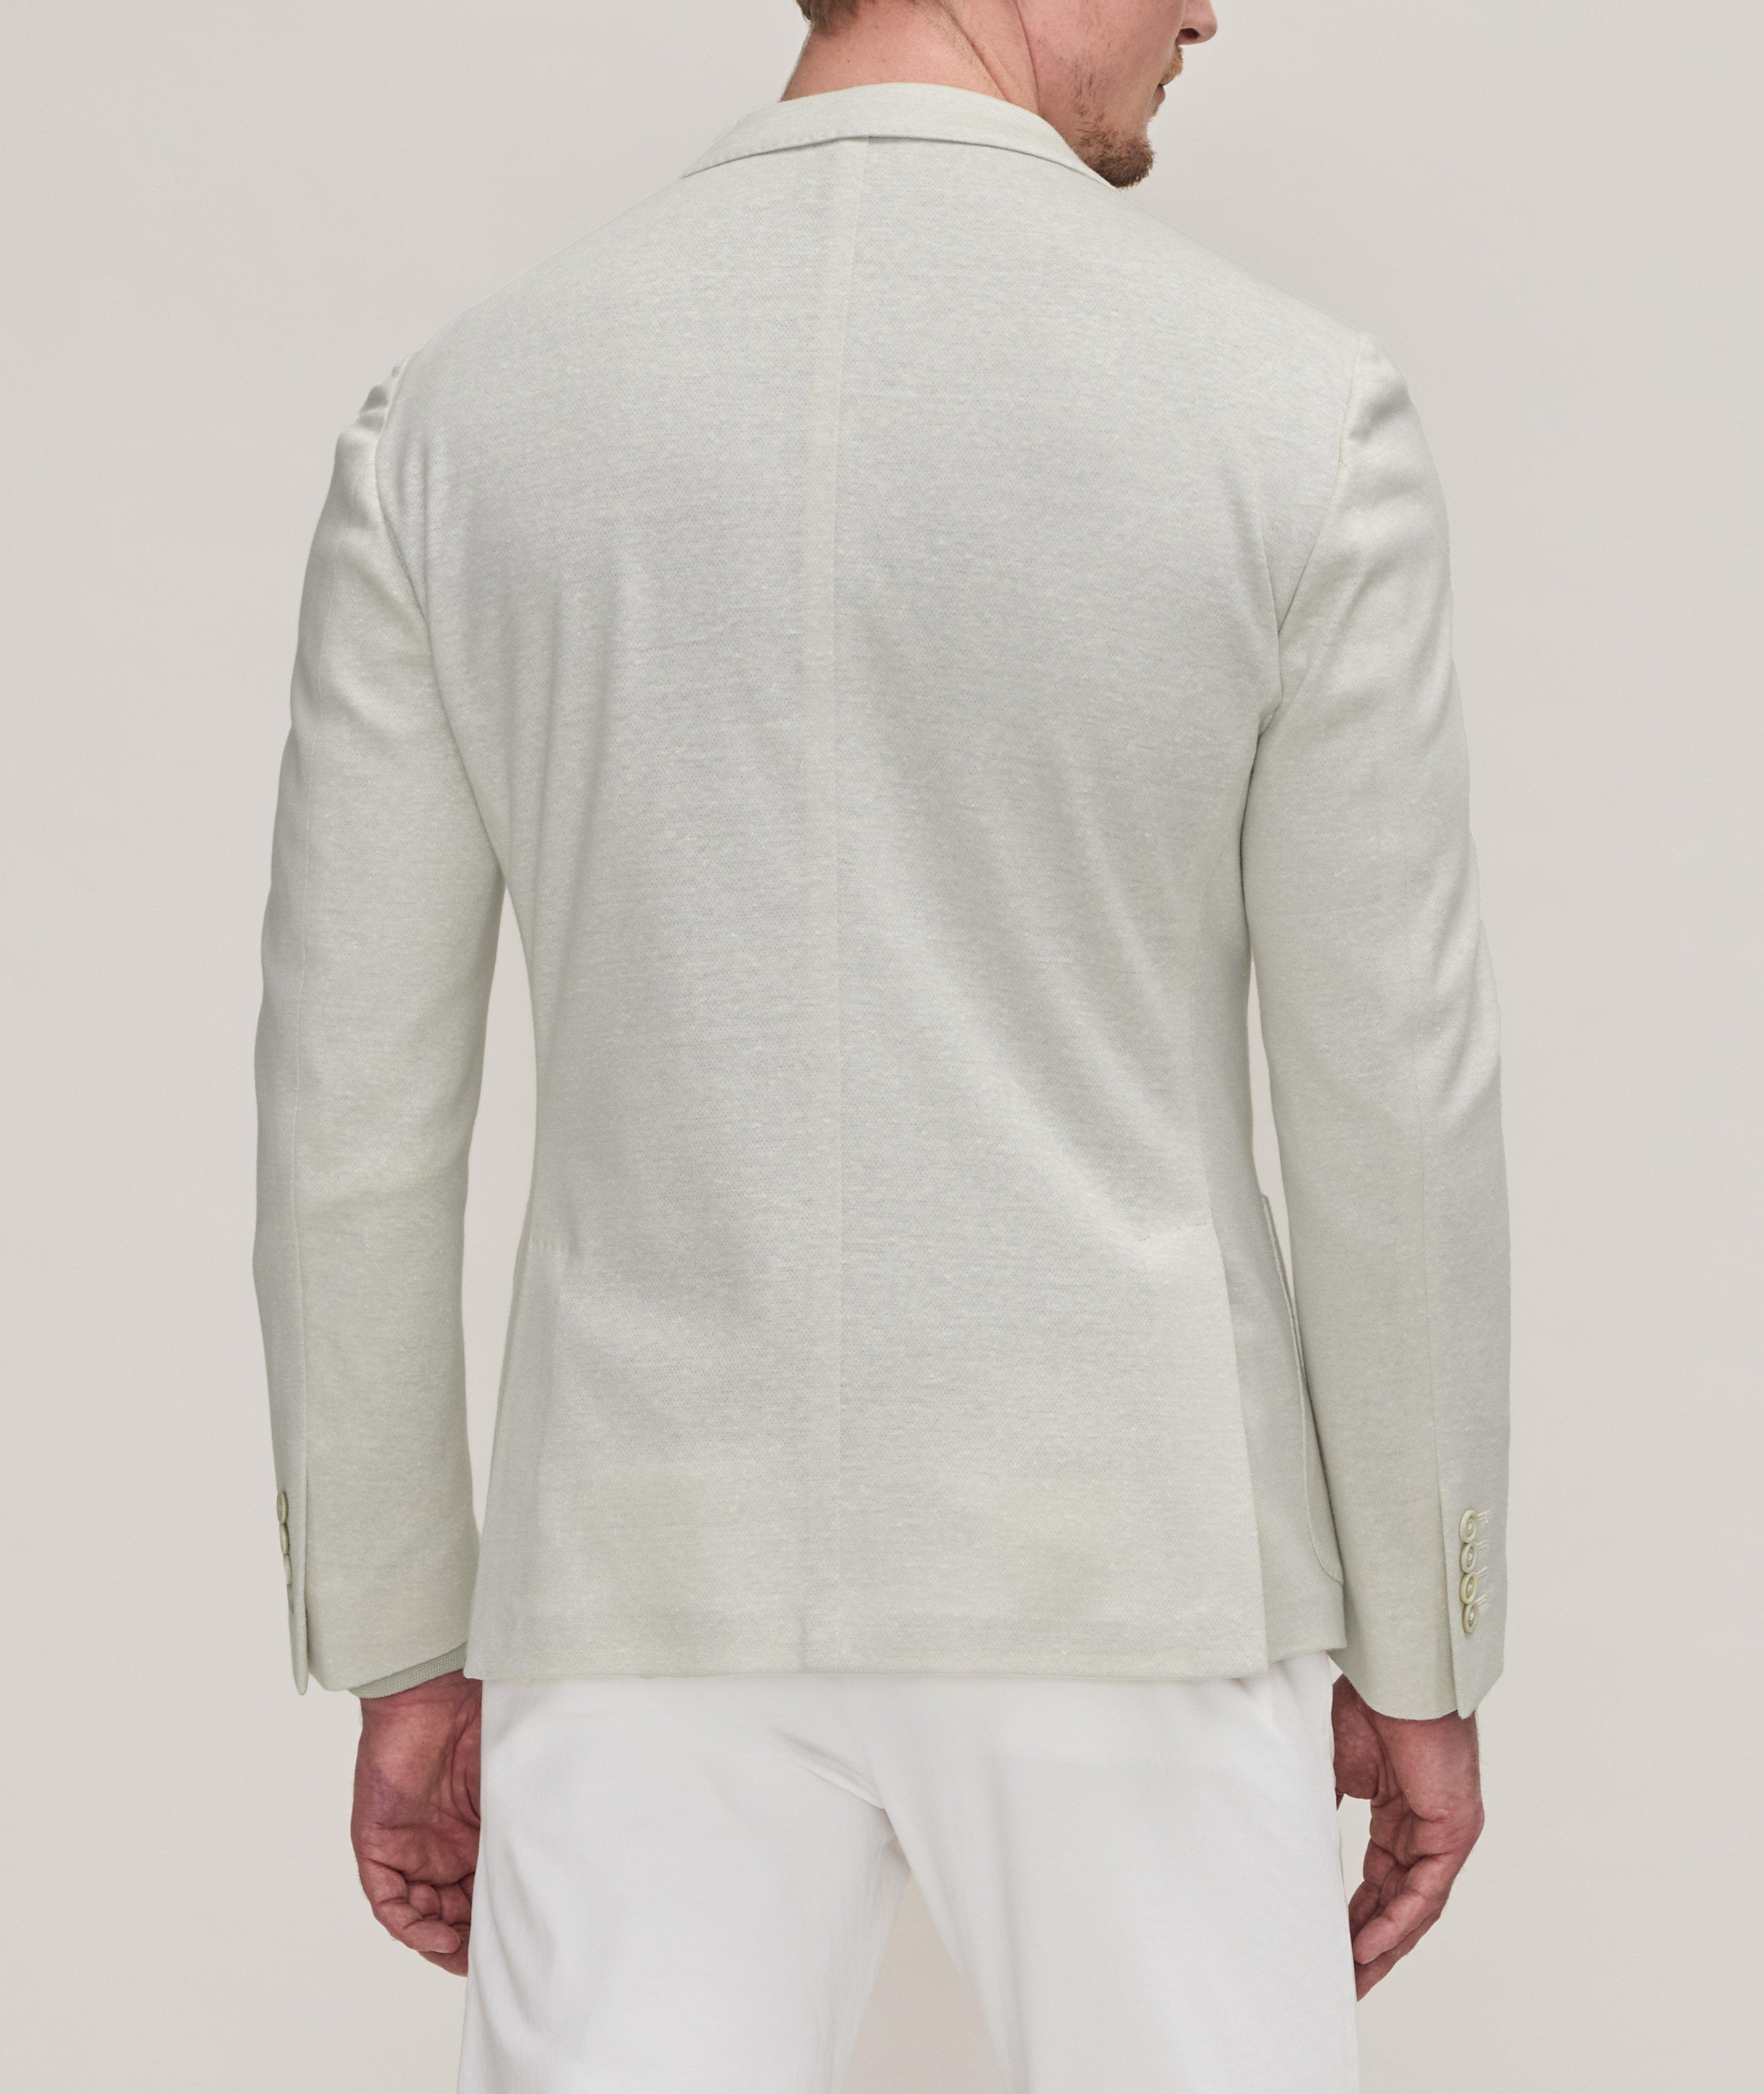 Linen-Cotton Soft Jacket